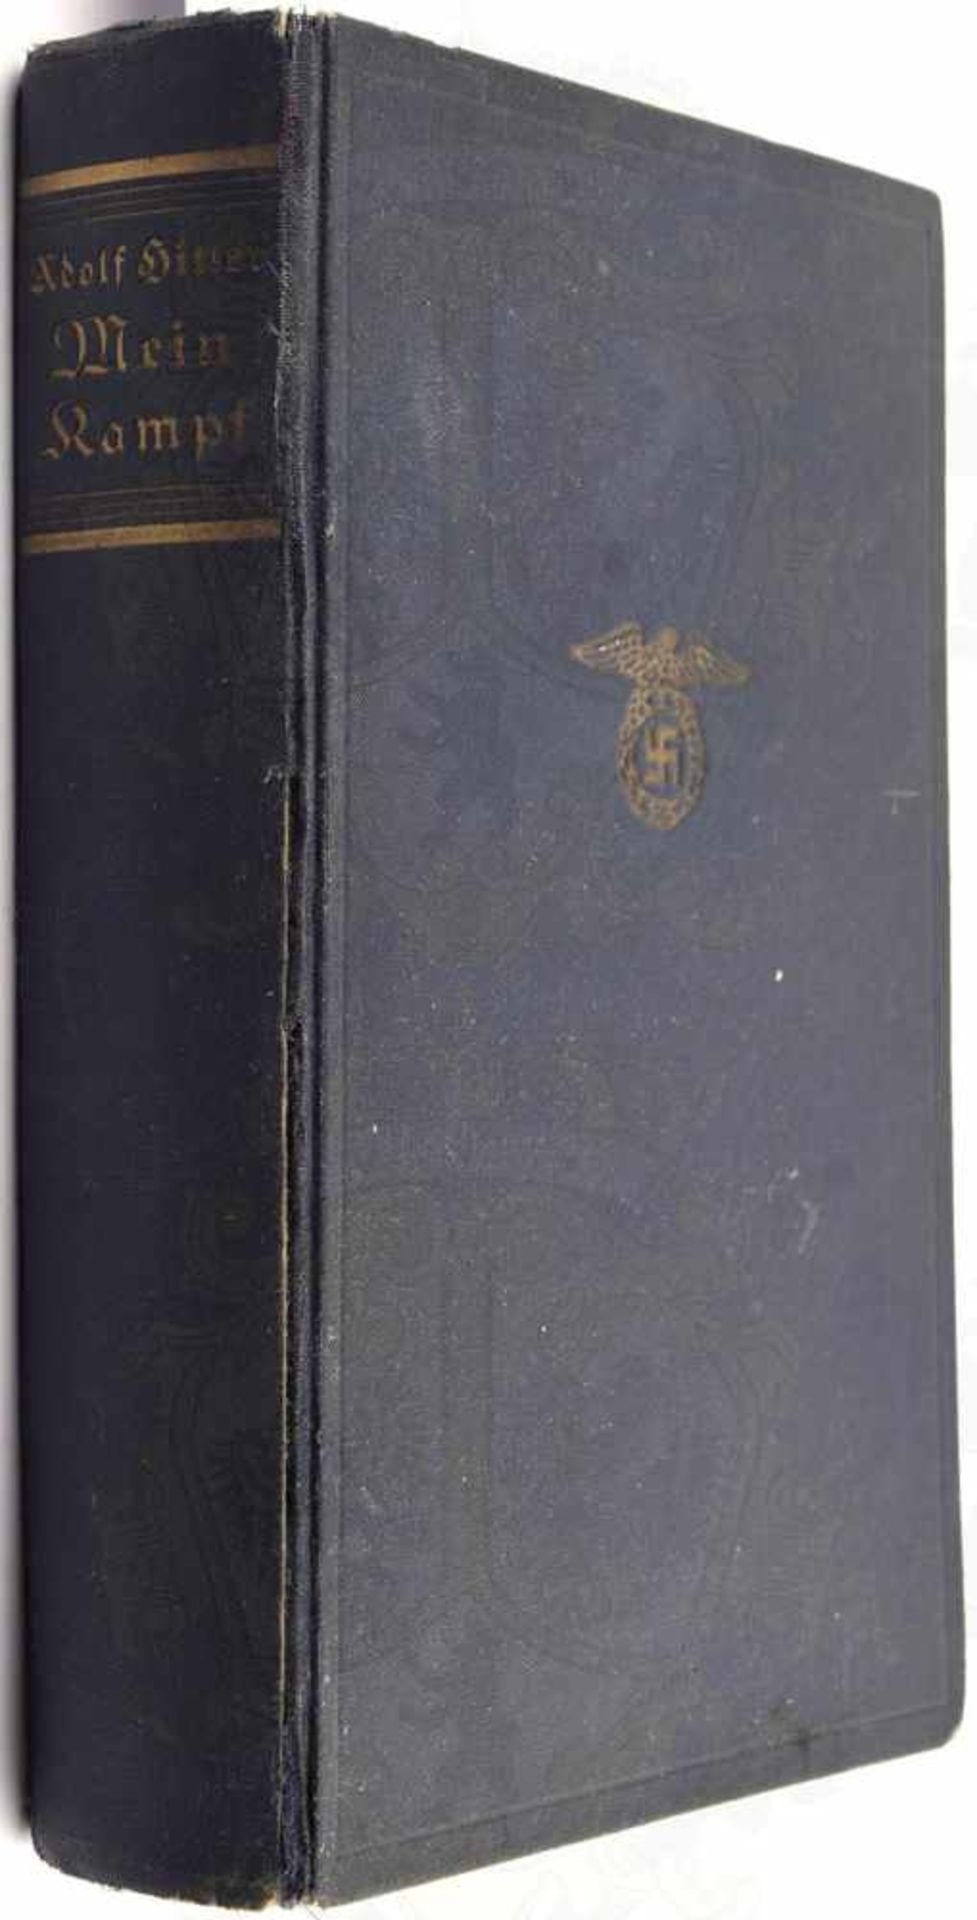 MEIN KAMPF, Adolf Hitler, Volksausgabe, Eher Verlag, München 1938, 781 S., 1 Portrait, goldgepr.,